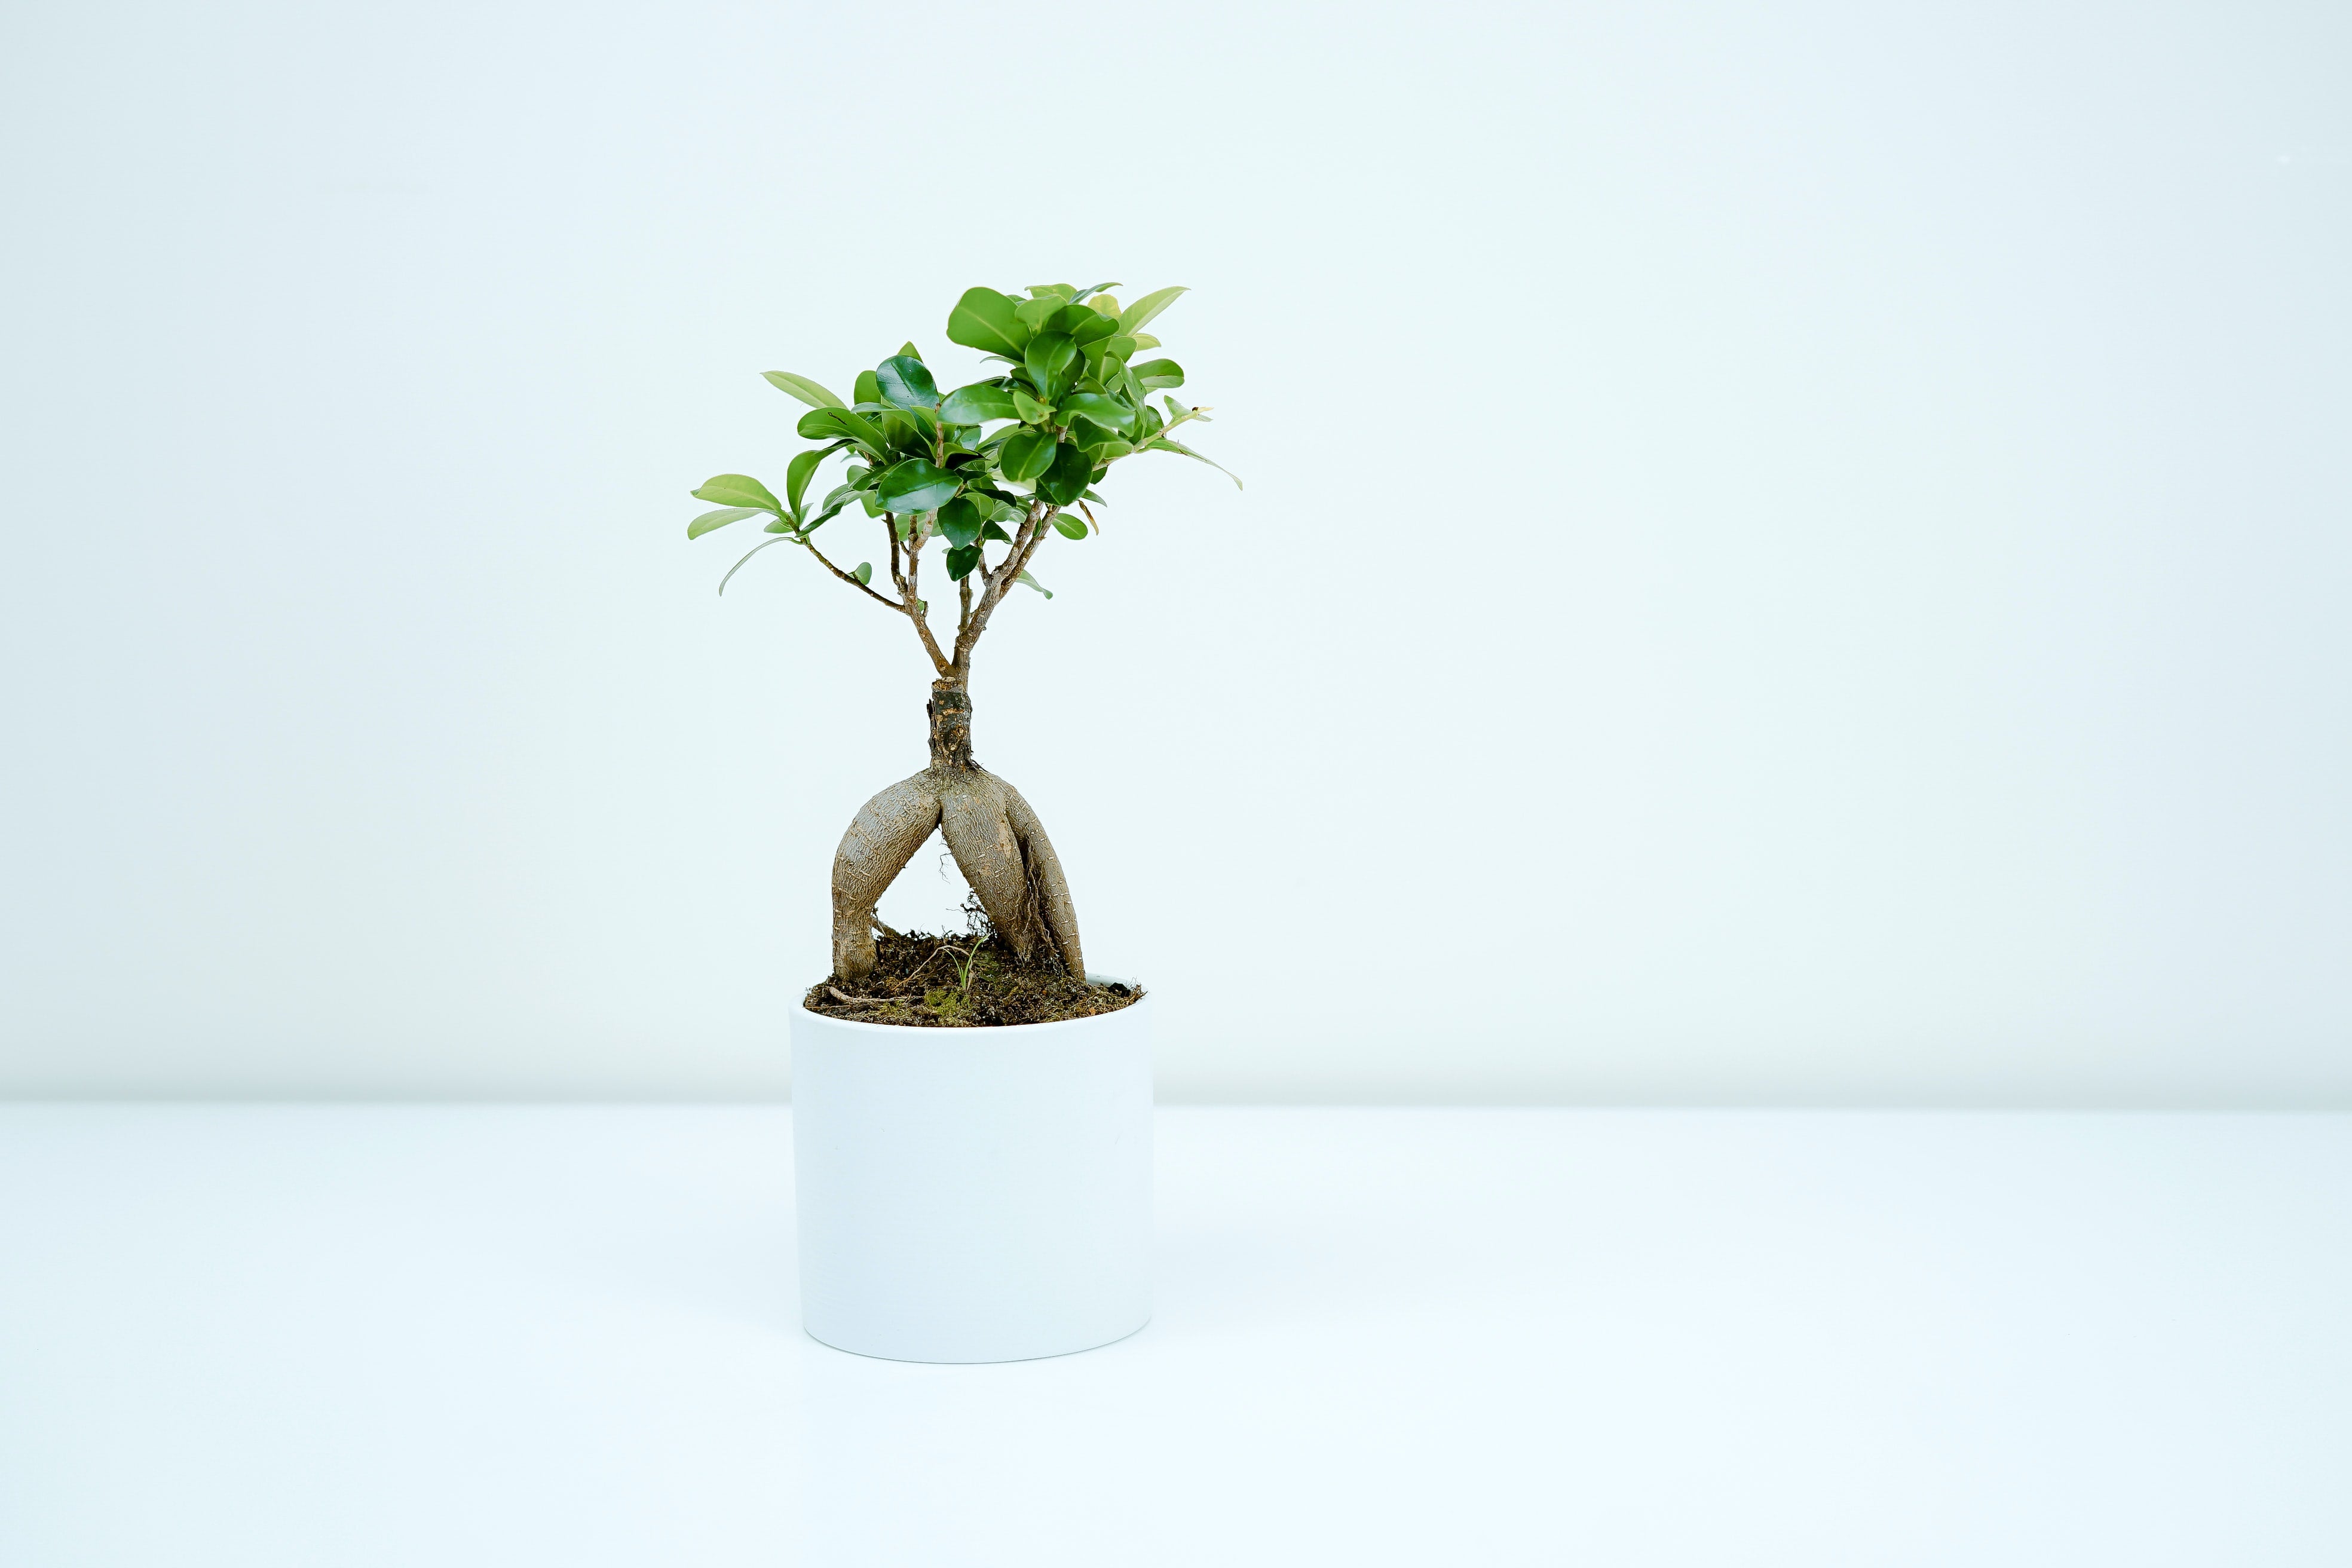 Ingrijirea bonsaiului. Ce trebuie sa stii despre cea mai populara planta a momentului?